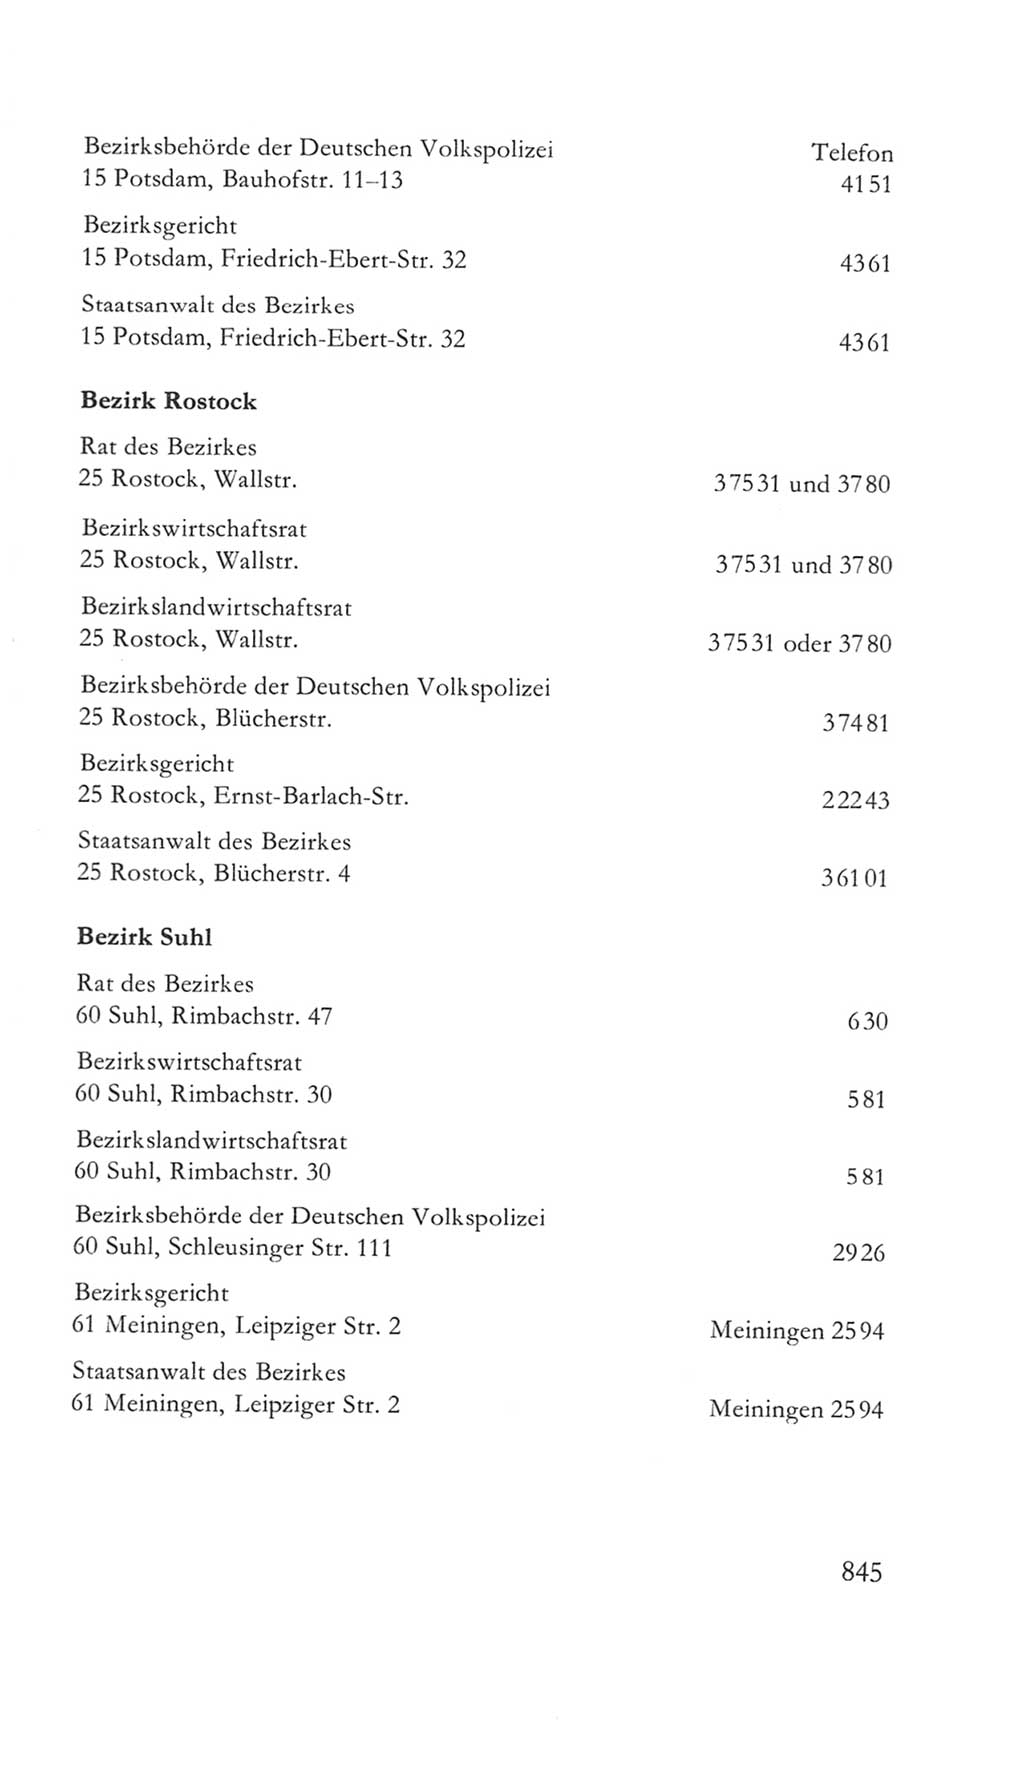 Volkskammer (VK) der Deutschen Demokratischen Republik (DDR) 5. Wahlperiode 1967-1971, Seite 845 (VK. DDR 5. WP. 1967-1971, S. 845)